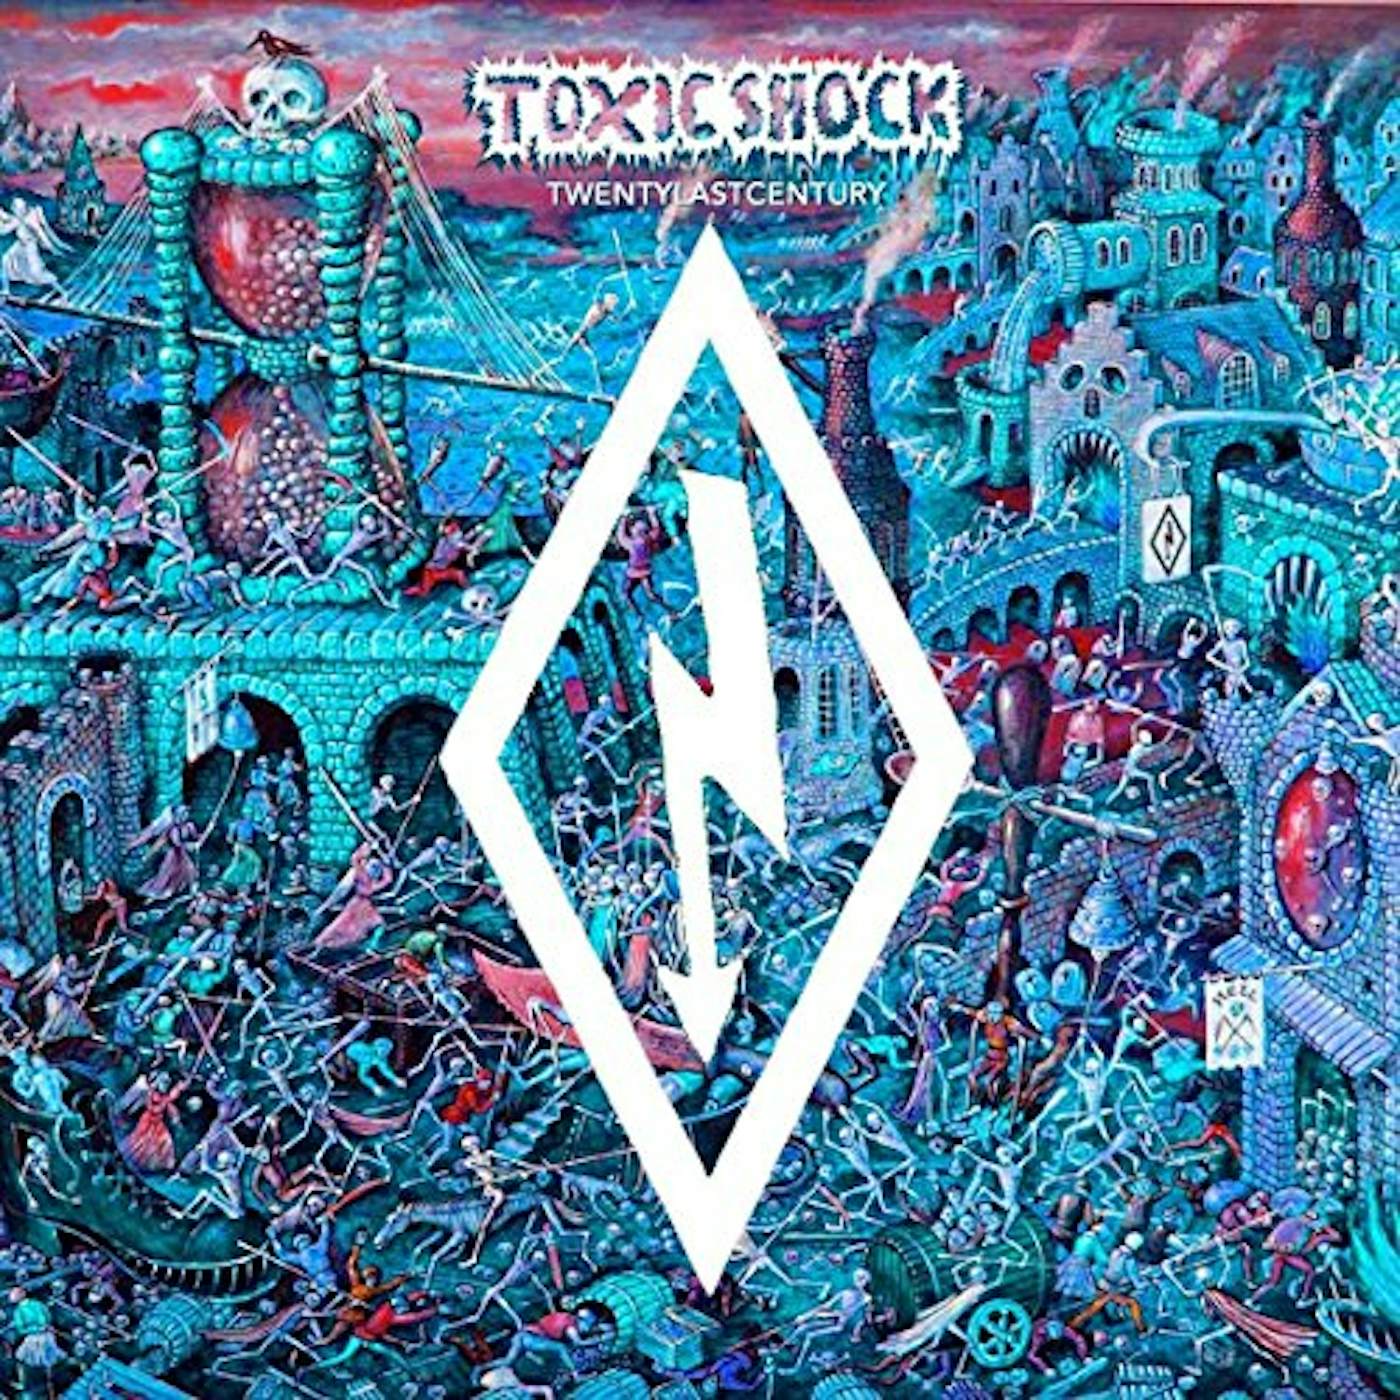 Toxic Shock TWENTYLASTCENTURY CD